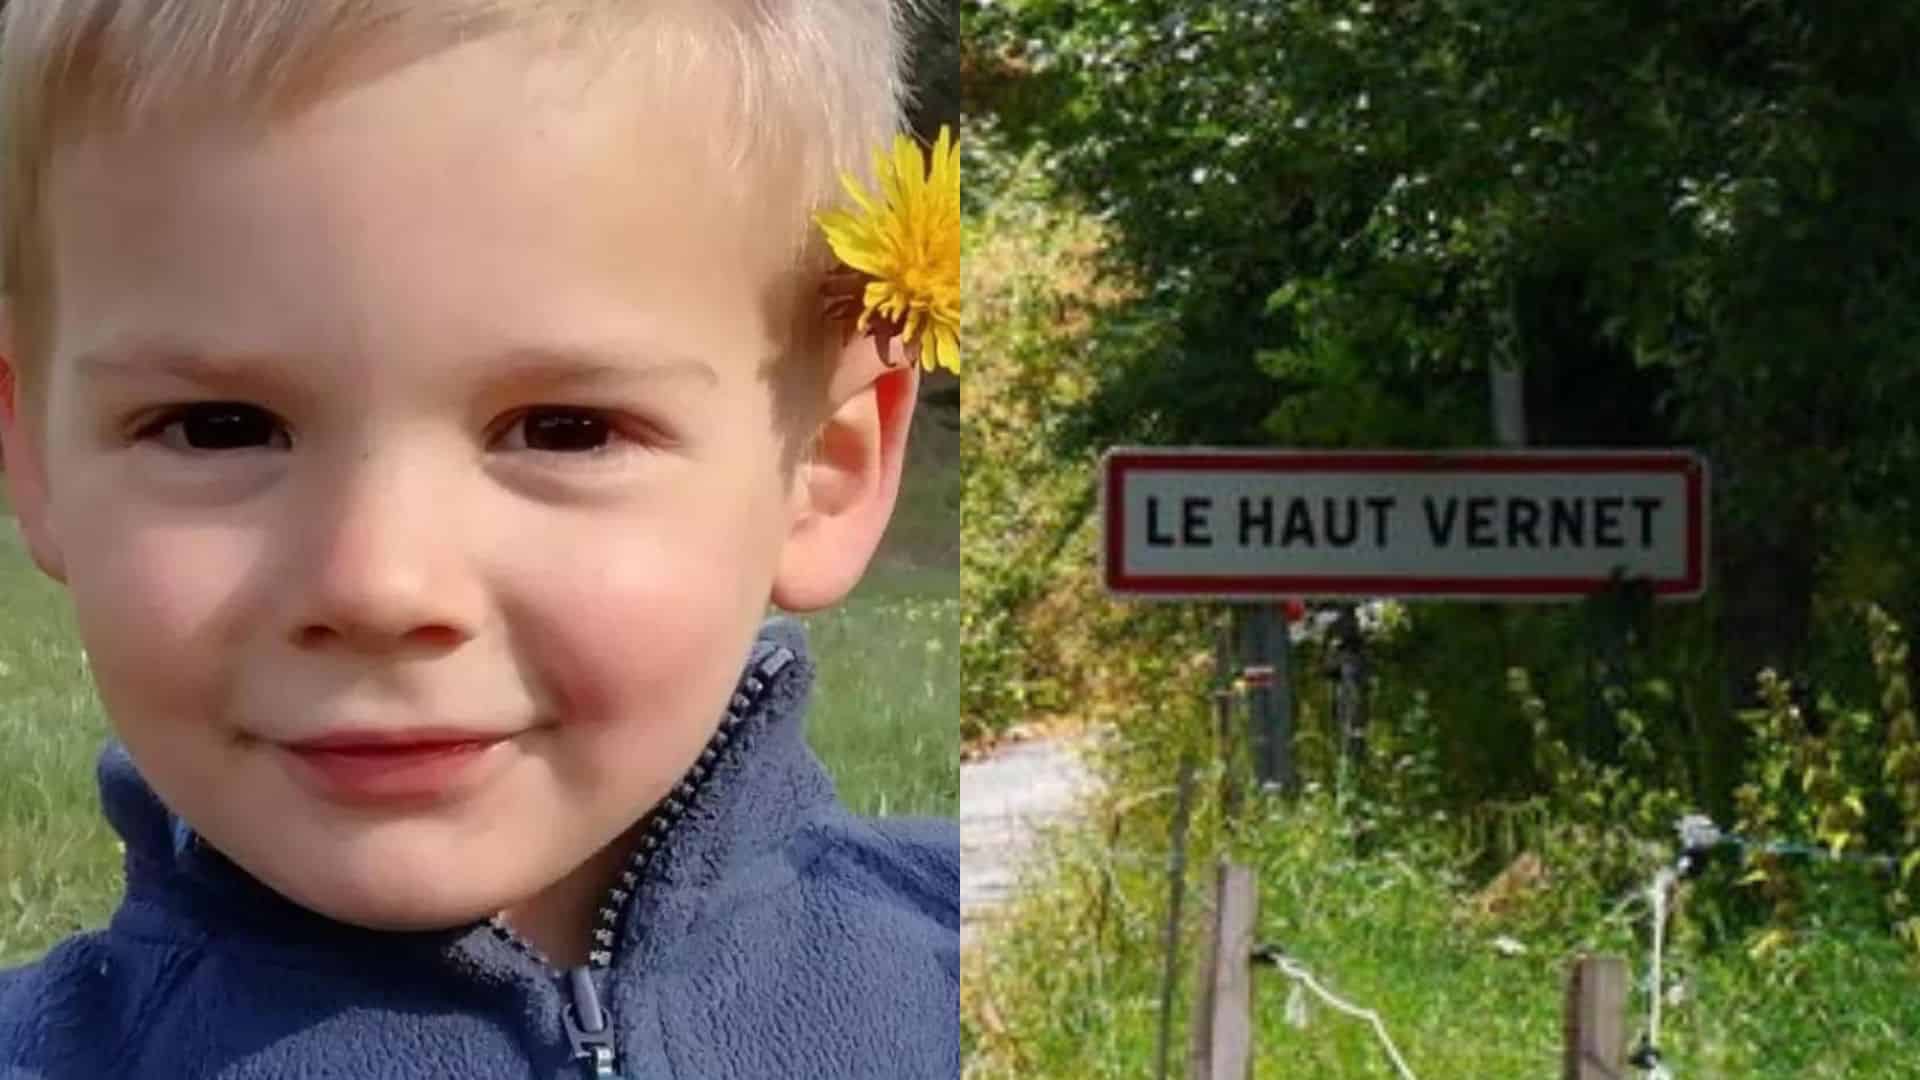 Disparition d’Emile, 2 ans, au Vernet : le maire du hameau prend une décision lourde de sens